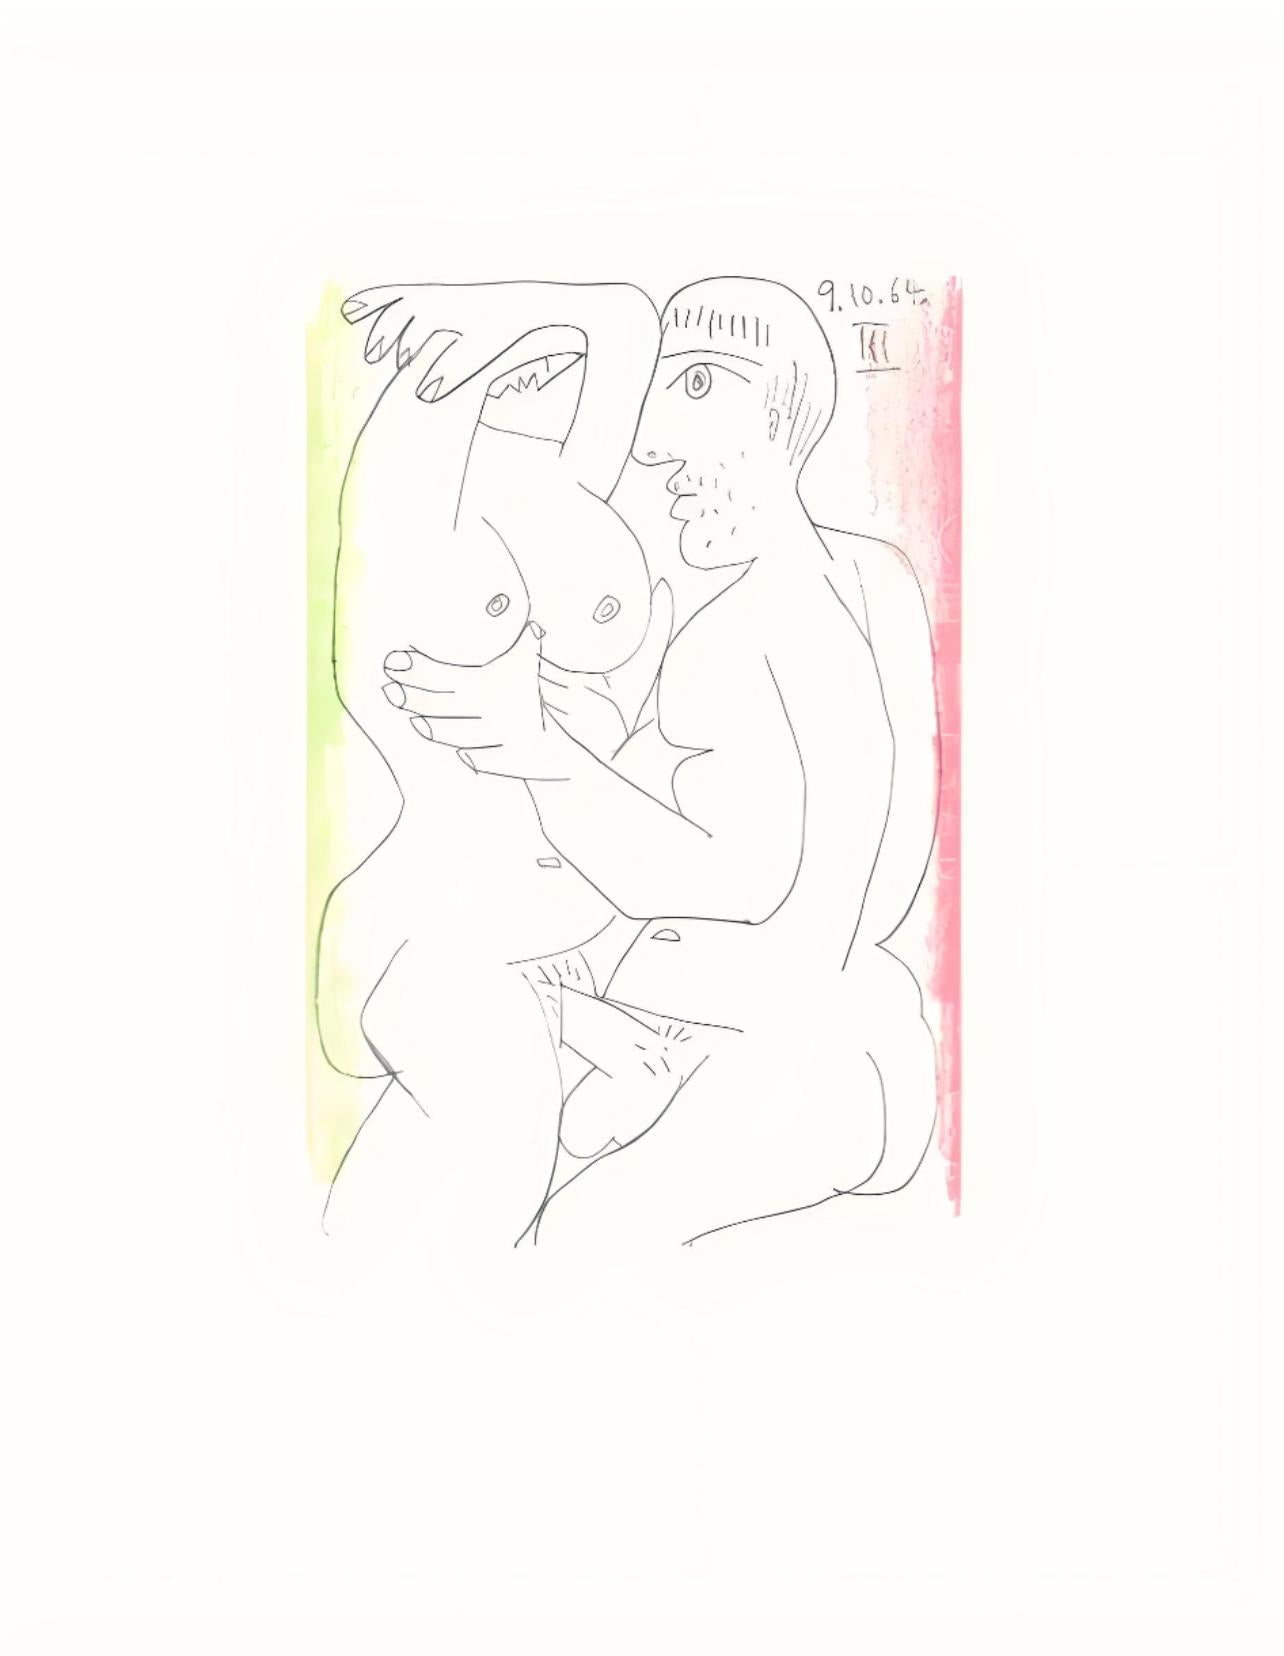 Picasso, Le Goût du Bonheur 70 (Cramer 148; Bloch 2013) (after) - Print by Pablo Picasso